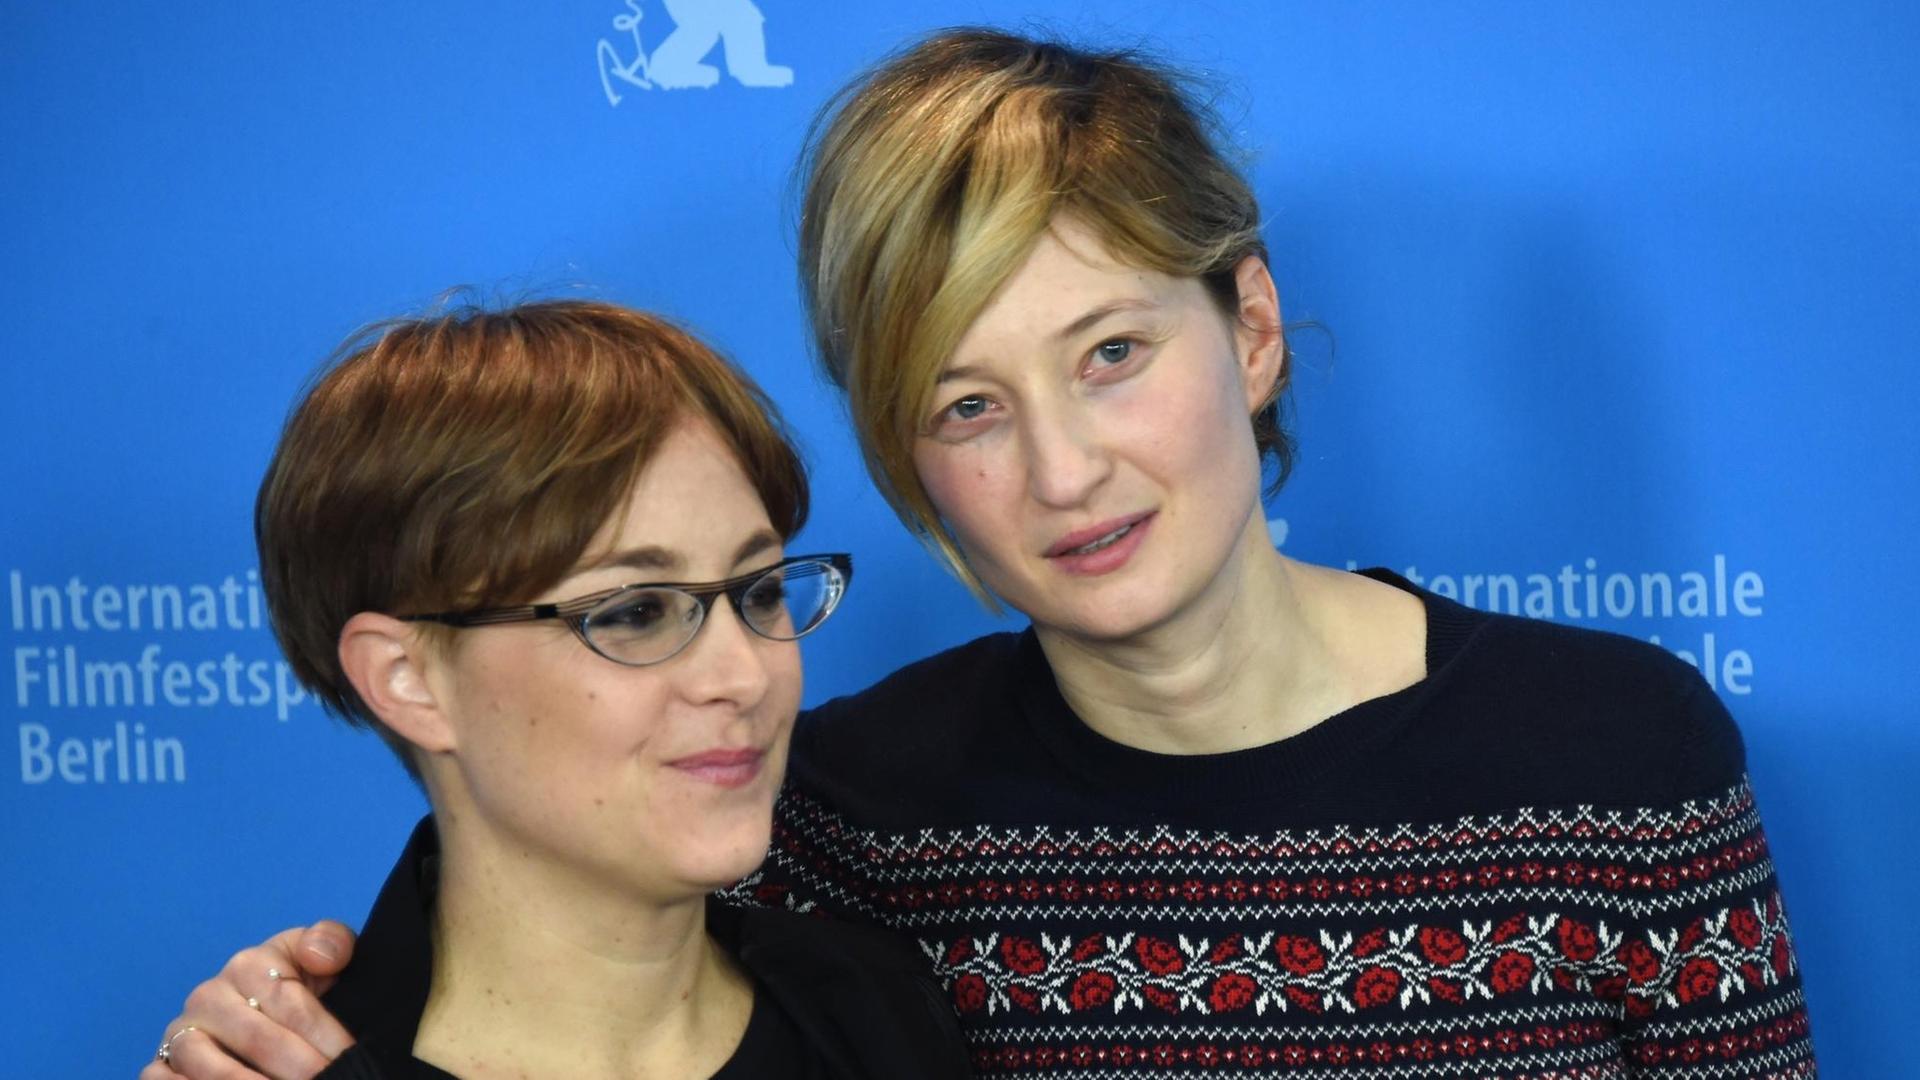 Die italienische Regisseurin Laura Bispuri (Links) gemeinsam mit der Schauspielerin Alba Rohrwacher während der Premierefeier ihres Films "Vergine giurata" auf der Berlinale.